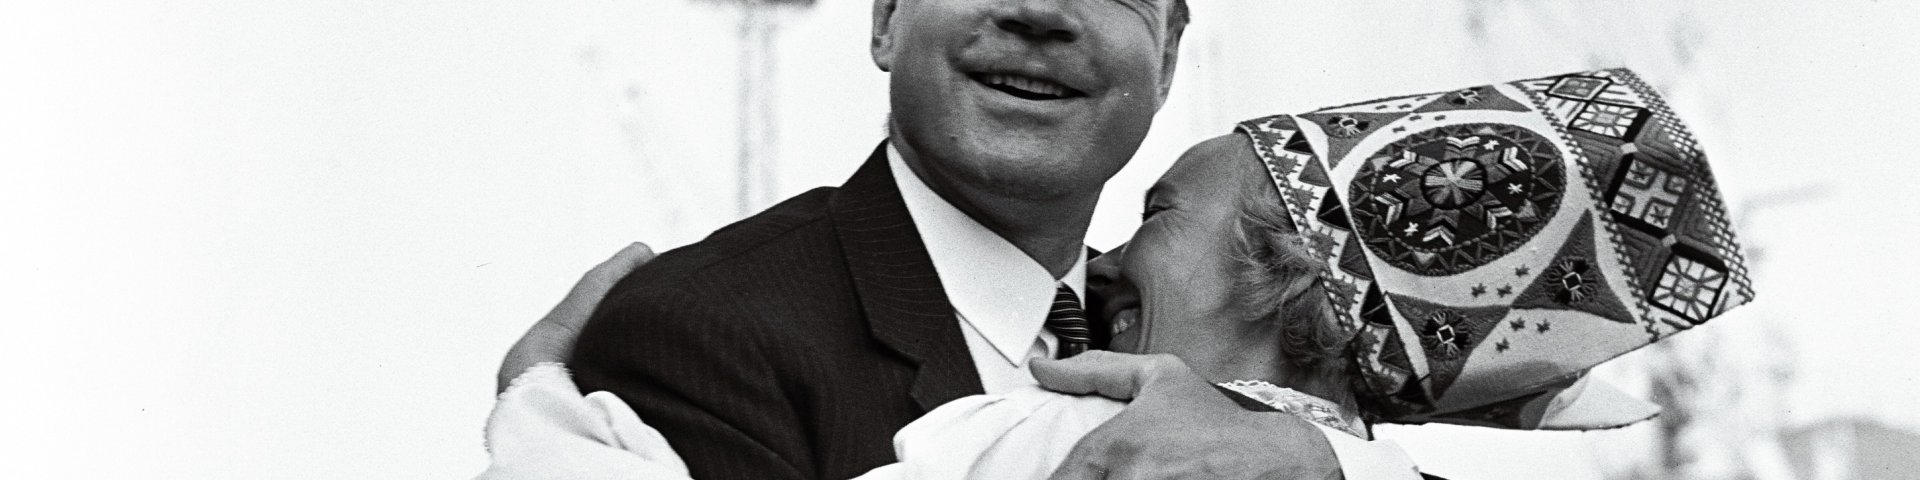 Soome peaminister, hilisem president Mauno Koivisto  juubelilaulupeol Tallinnas 1969. aastal. Rahvusarhiiv, EFA.204.0.81472